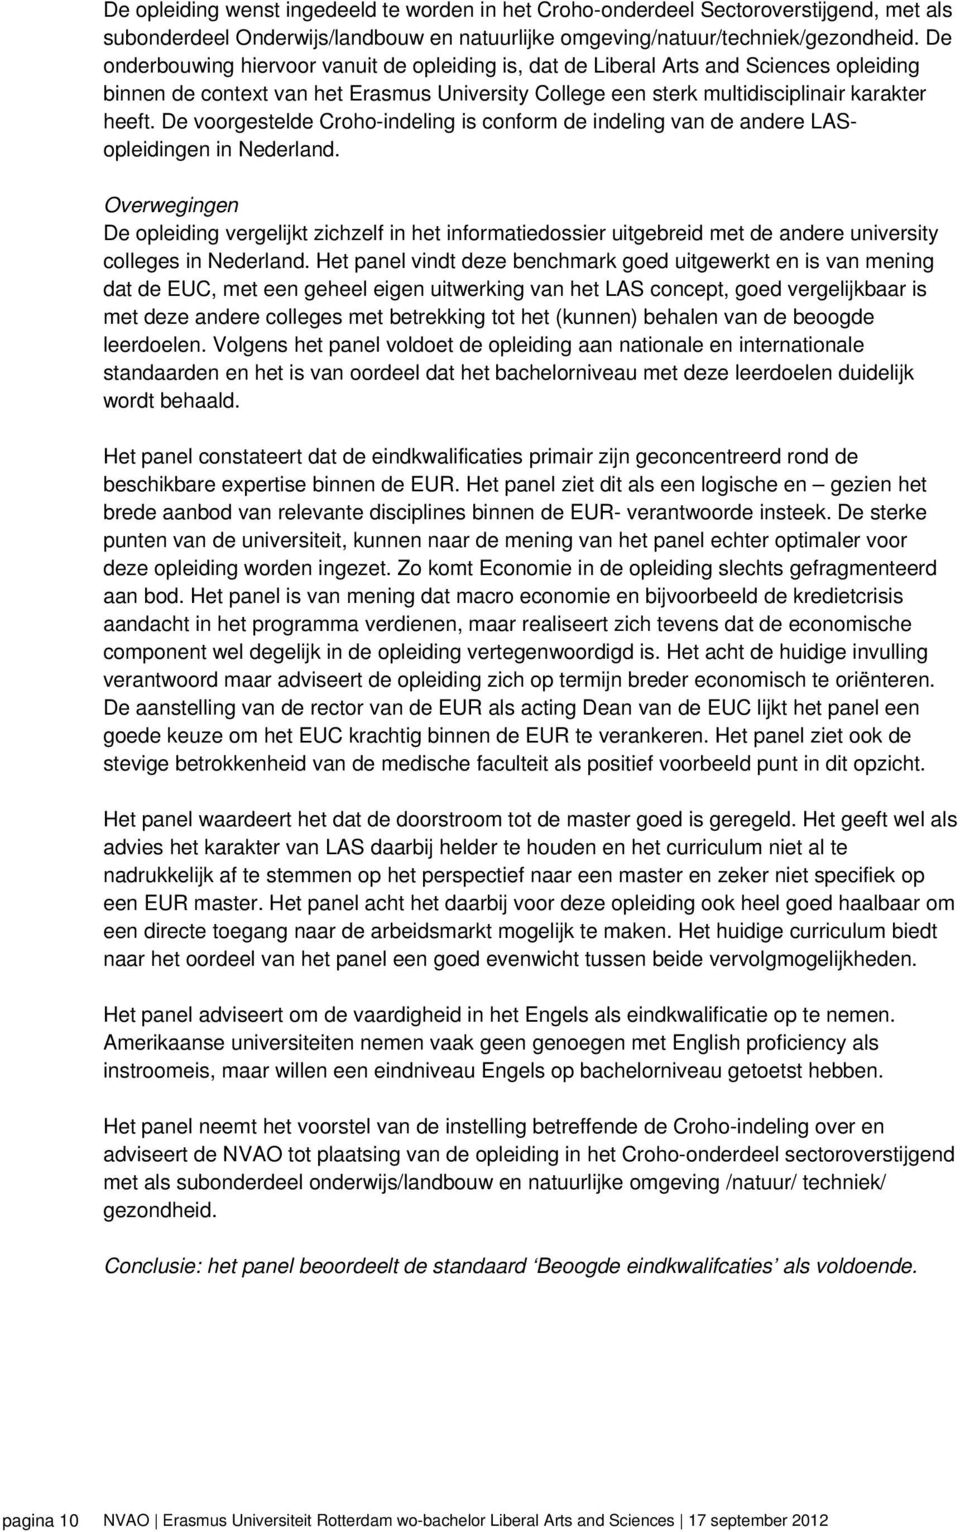 De voorgestelde Croho-indeling is conform de indeling van de andere LASopleidingen in Nederland.